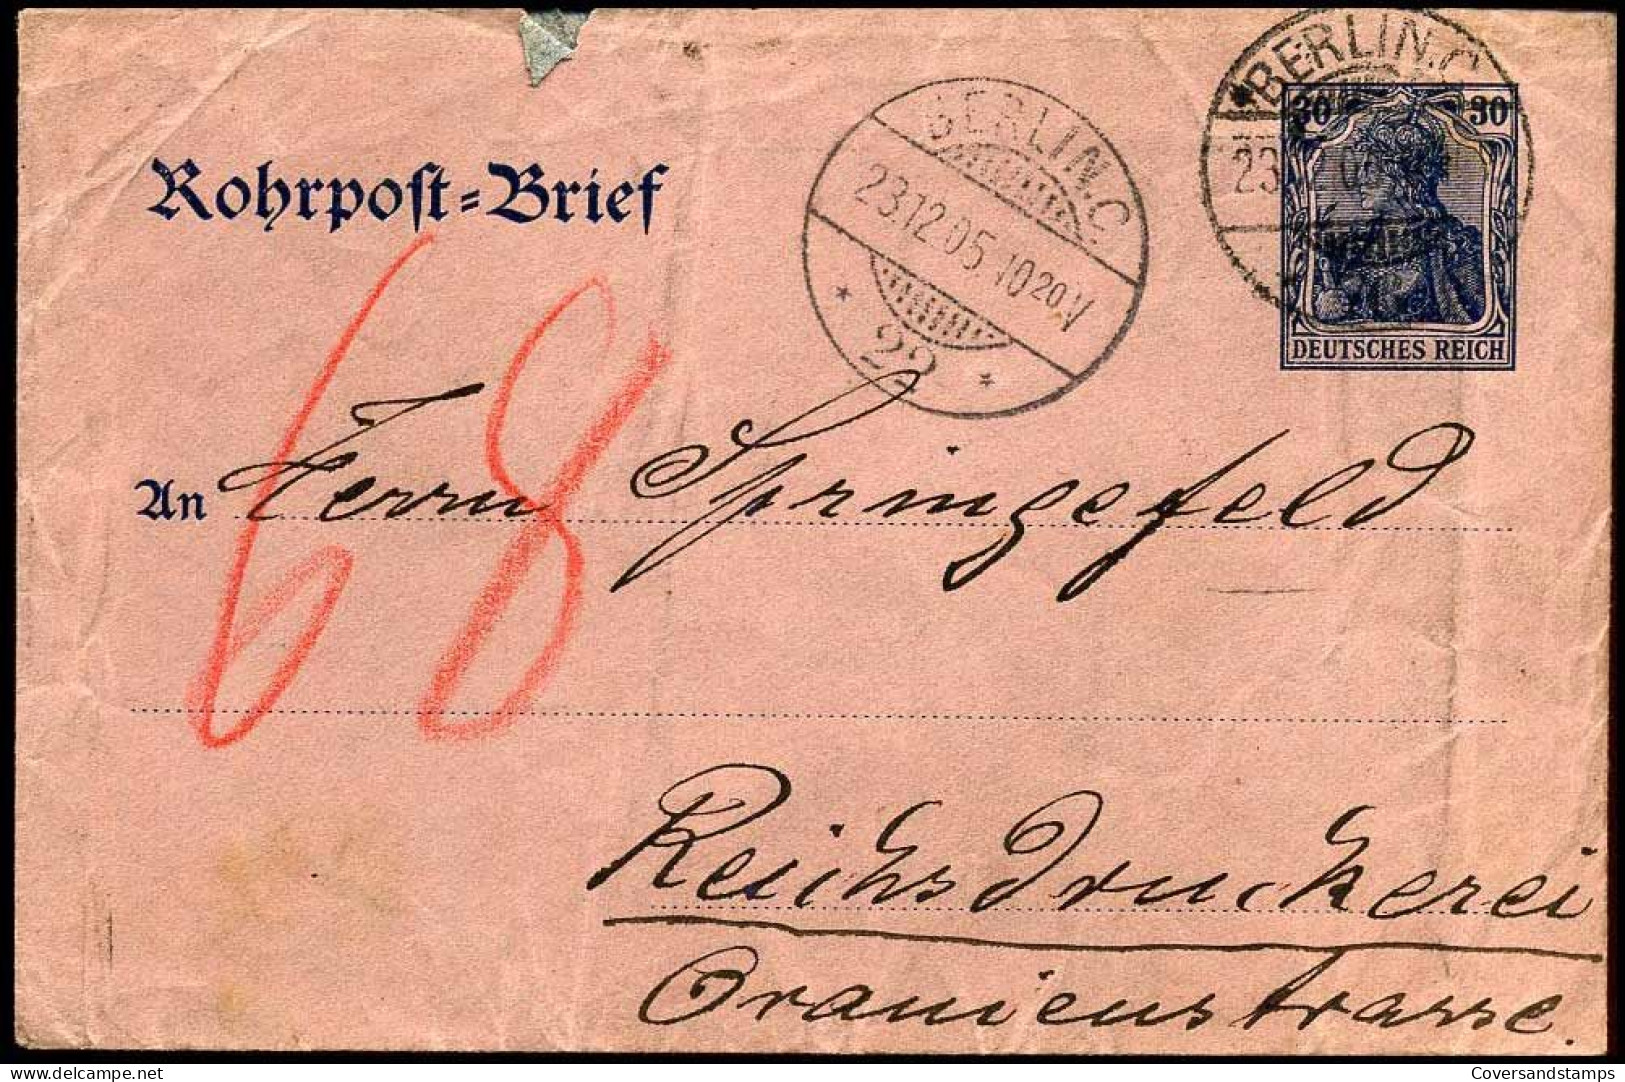 Rohrpost Brief - Berlin - Reichsdruckerei - Buste